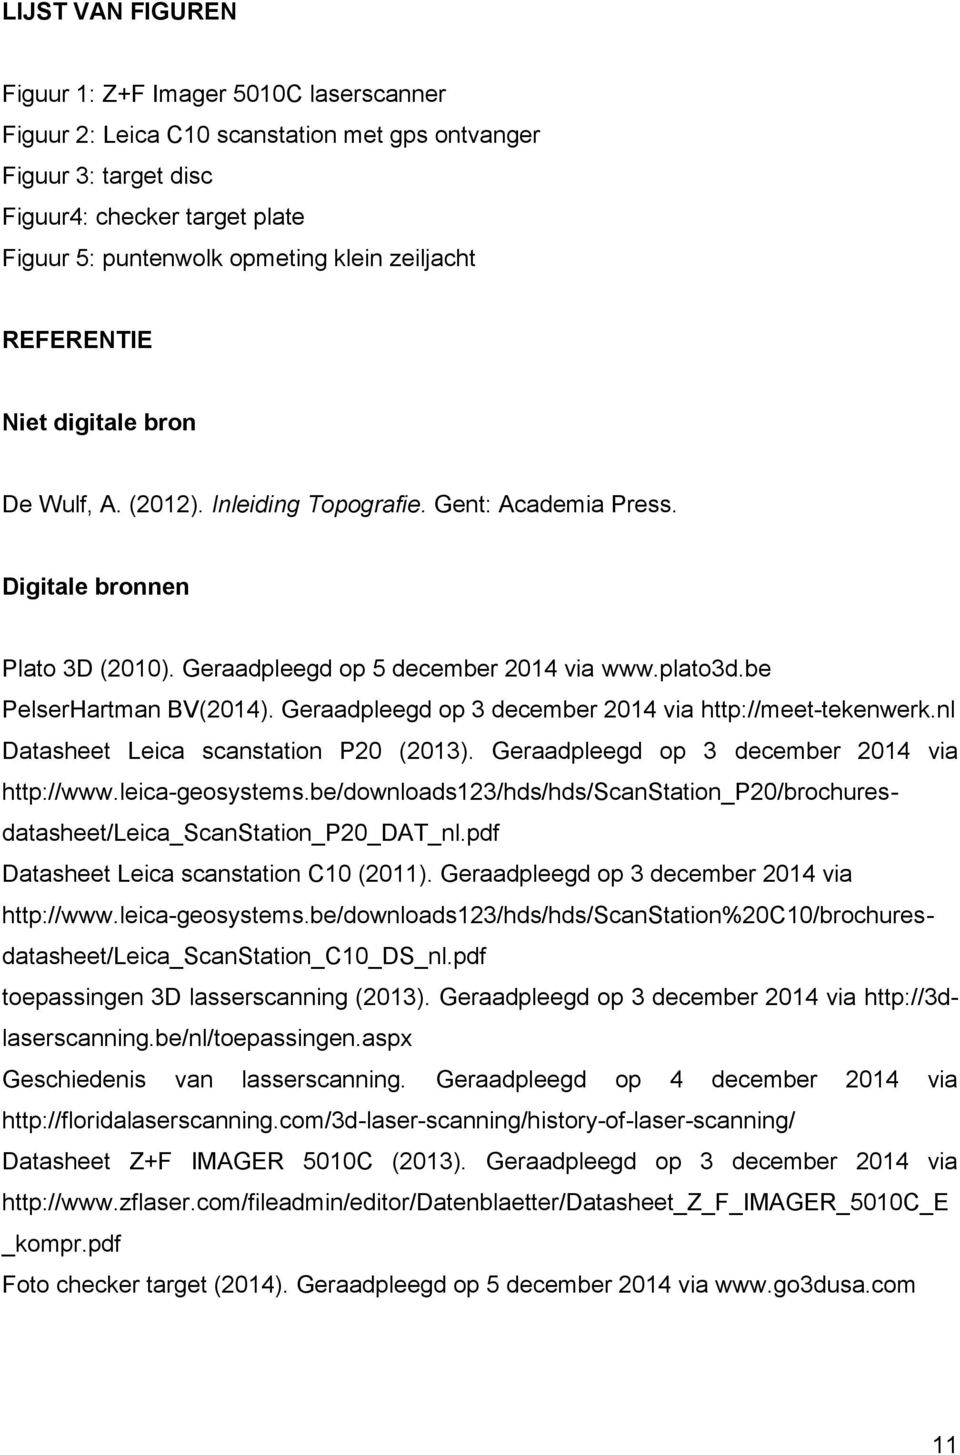 be PelserHartman BV(2014). Geraadpleegd op 3 december 2014 via http://meet-tekenwerk.nl Datasheet Leica scanstation P20 (2013). Geraadpleegd op 3 december 2014 via http://www.leica-geosystems.